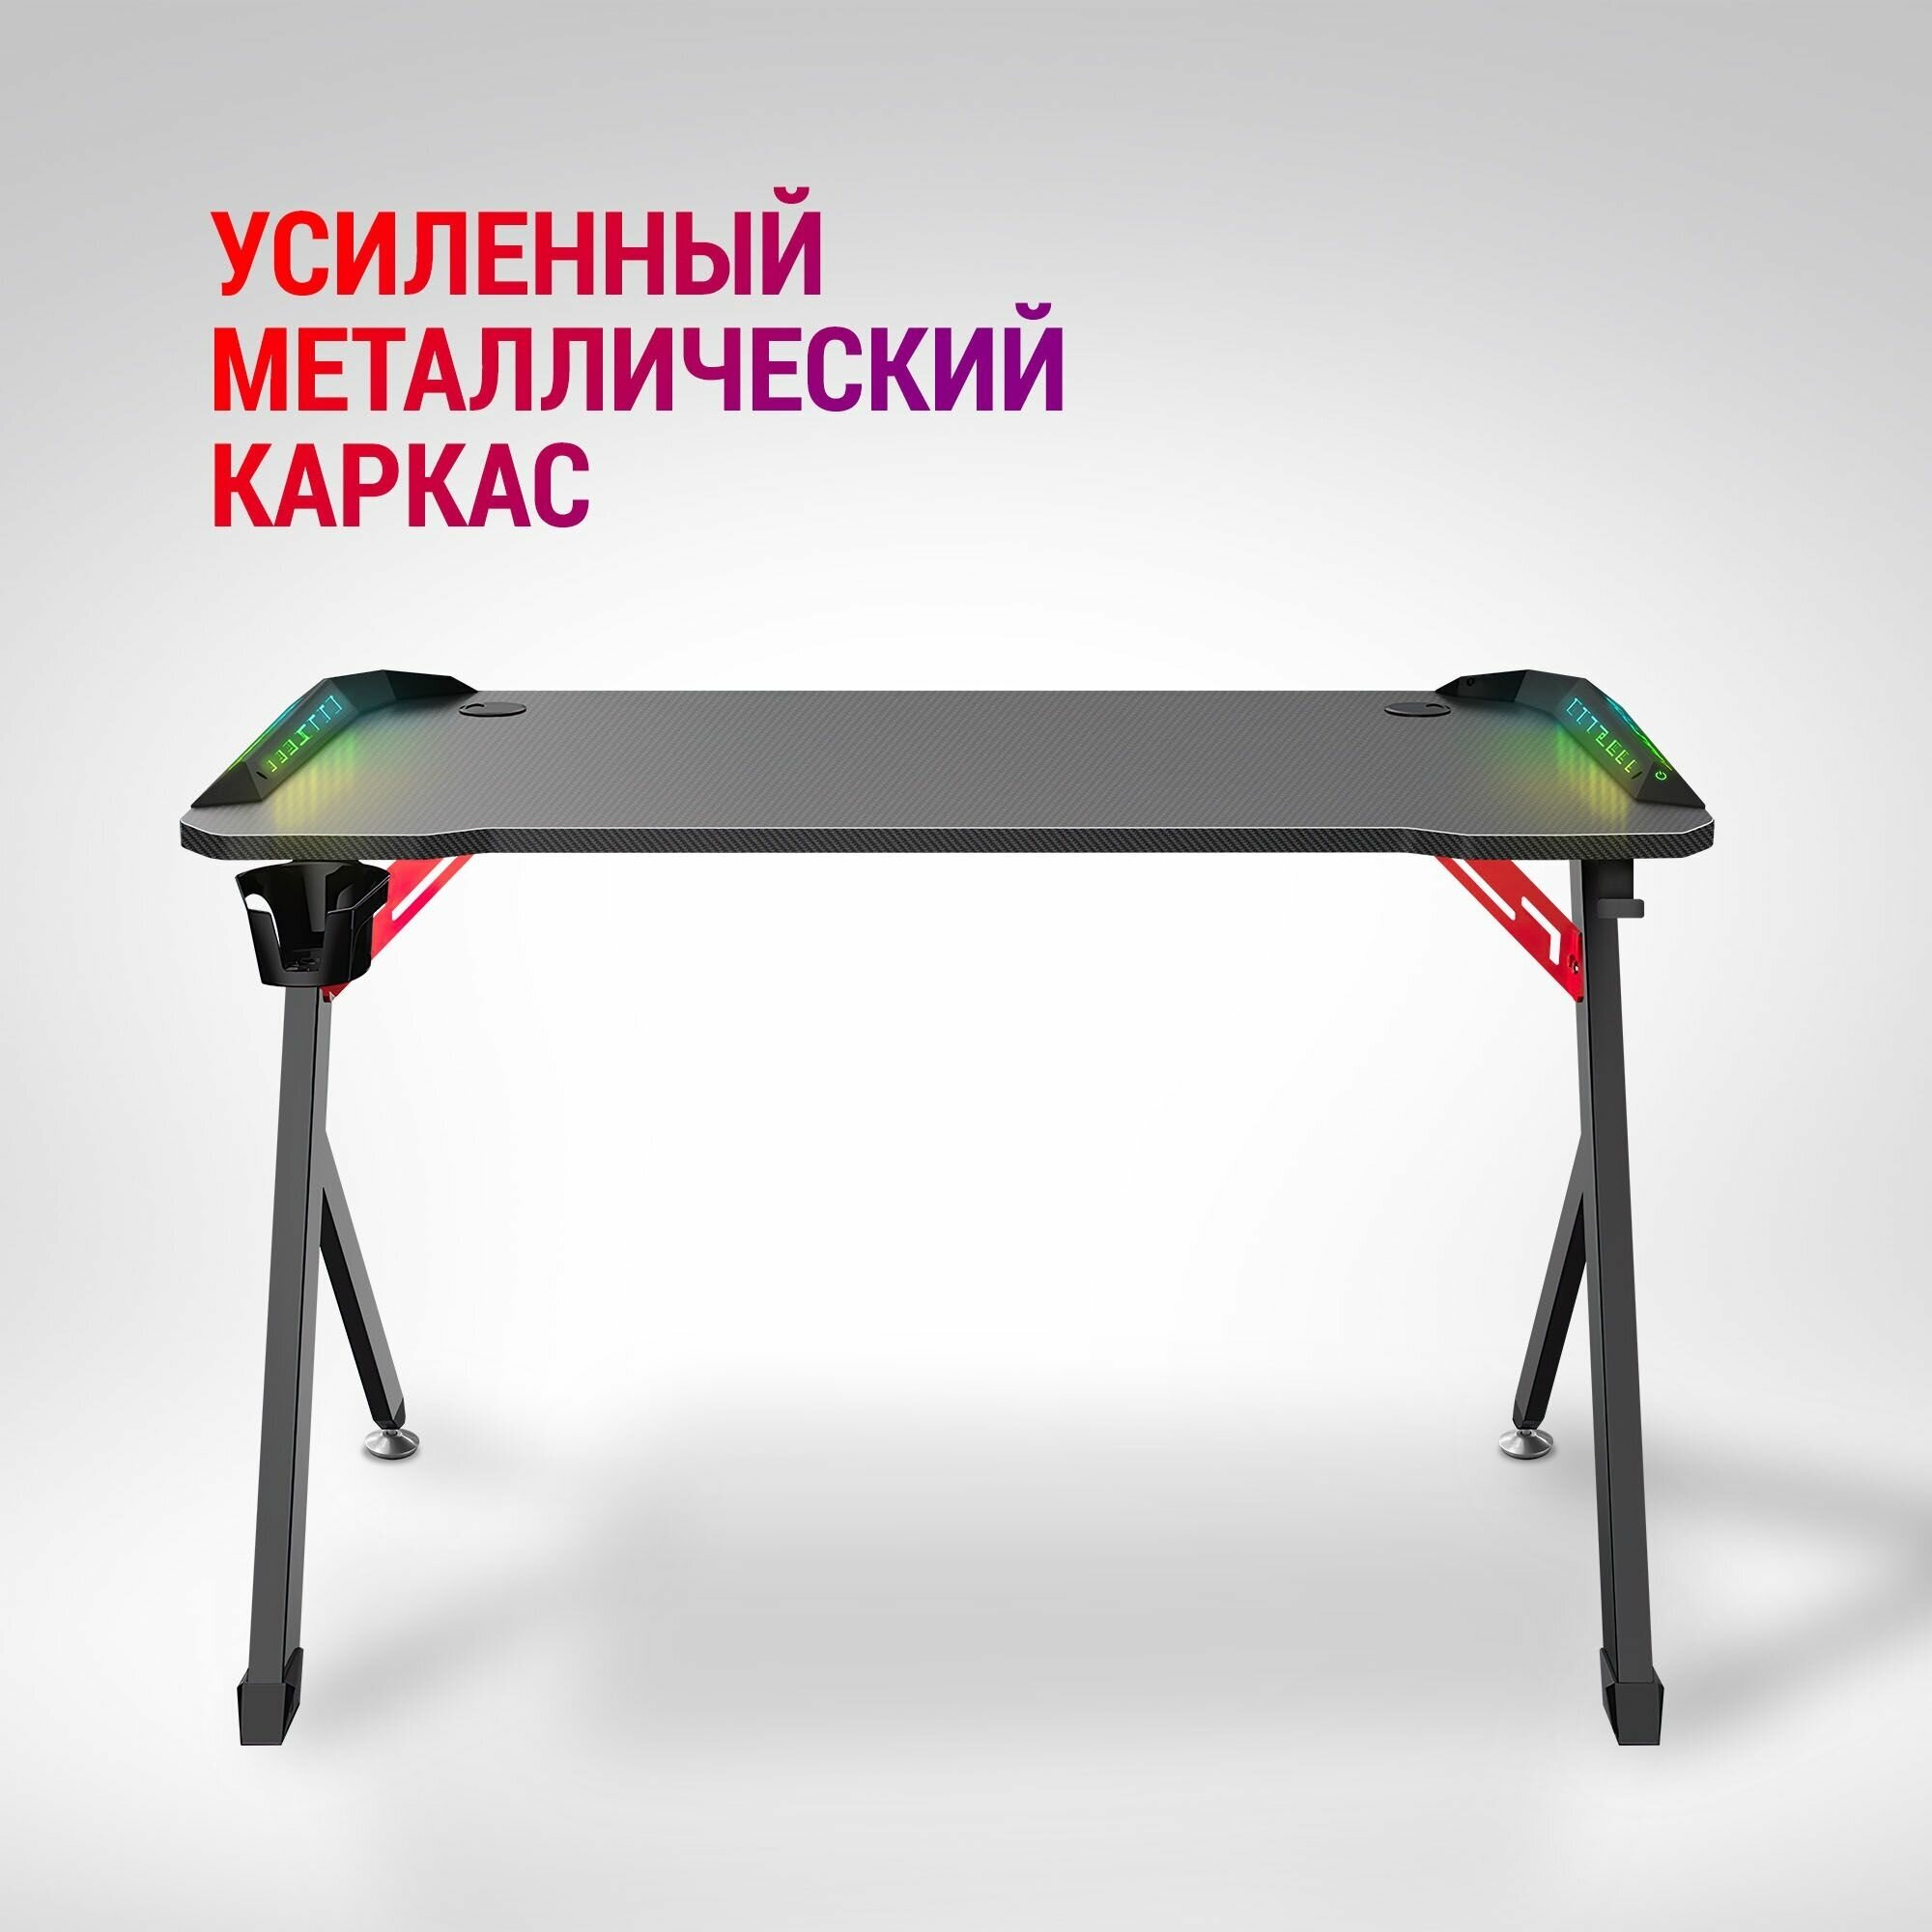 Игровой стол Defender Platinum RGB, подвес кружки+гарн, черн.